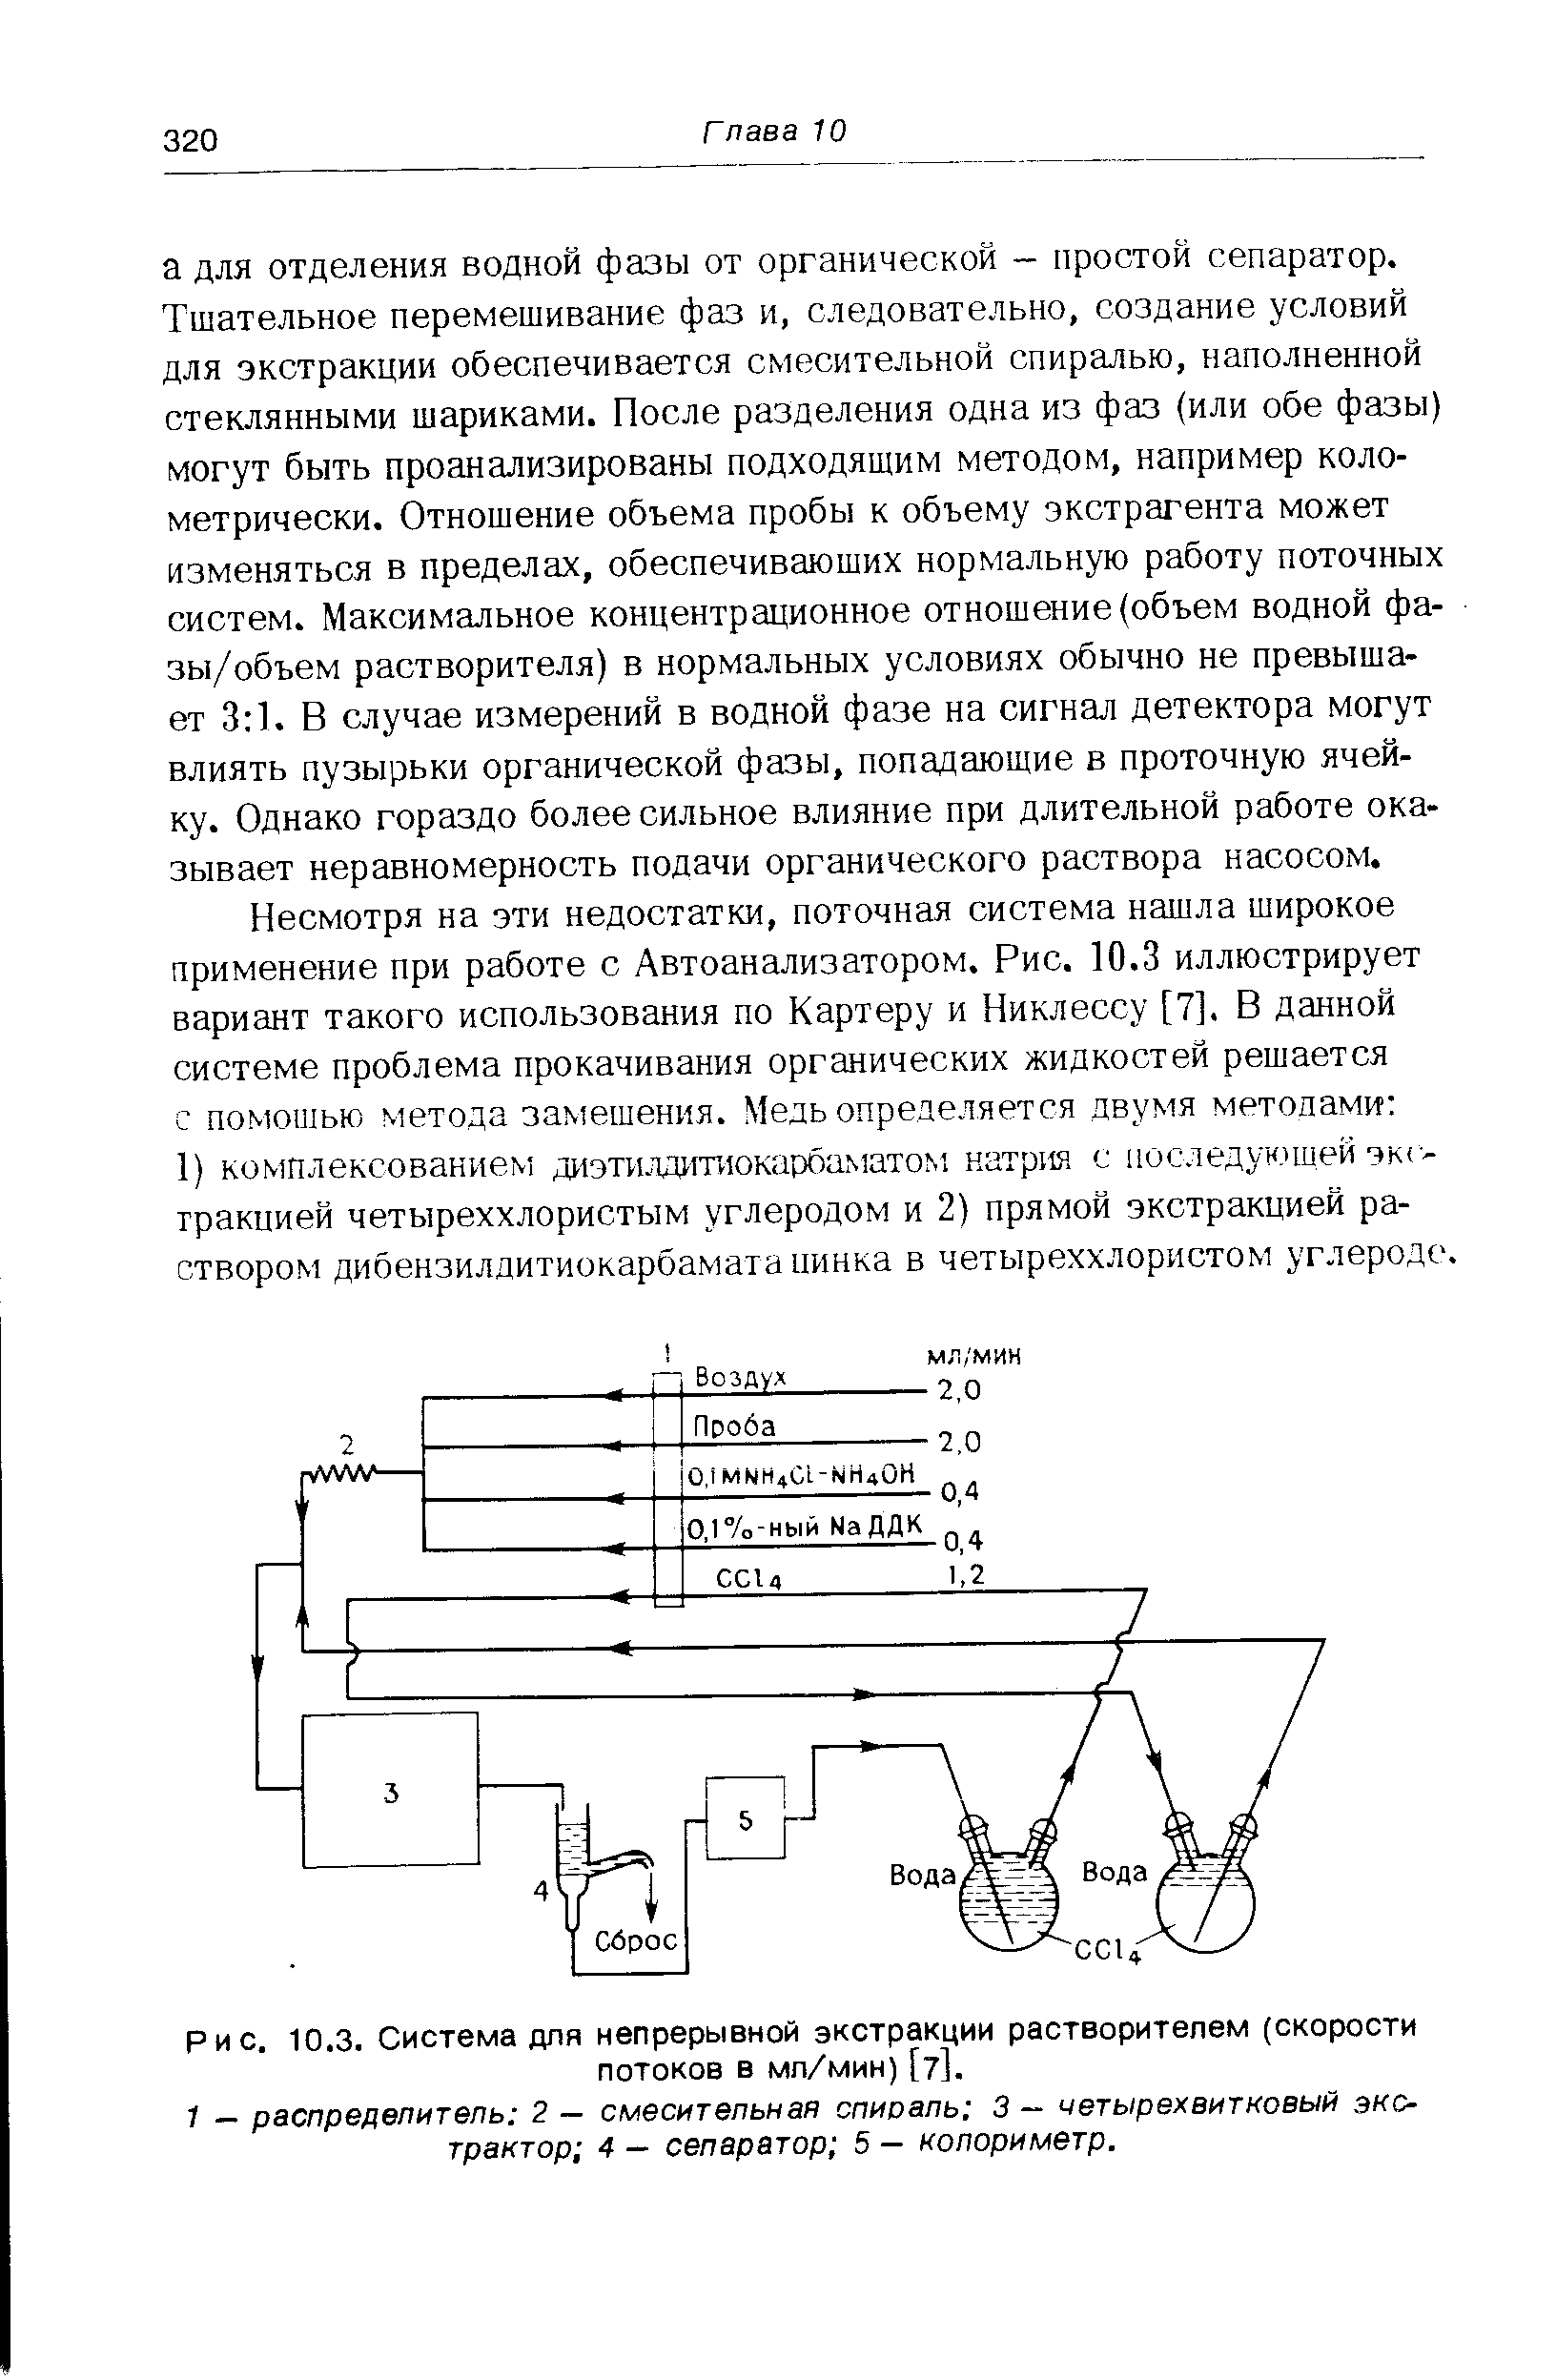 Рис. 10.3. Система для непрерывной экстракции растворителем (скорости потоков в мл/мин) [7].